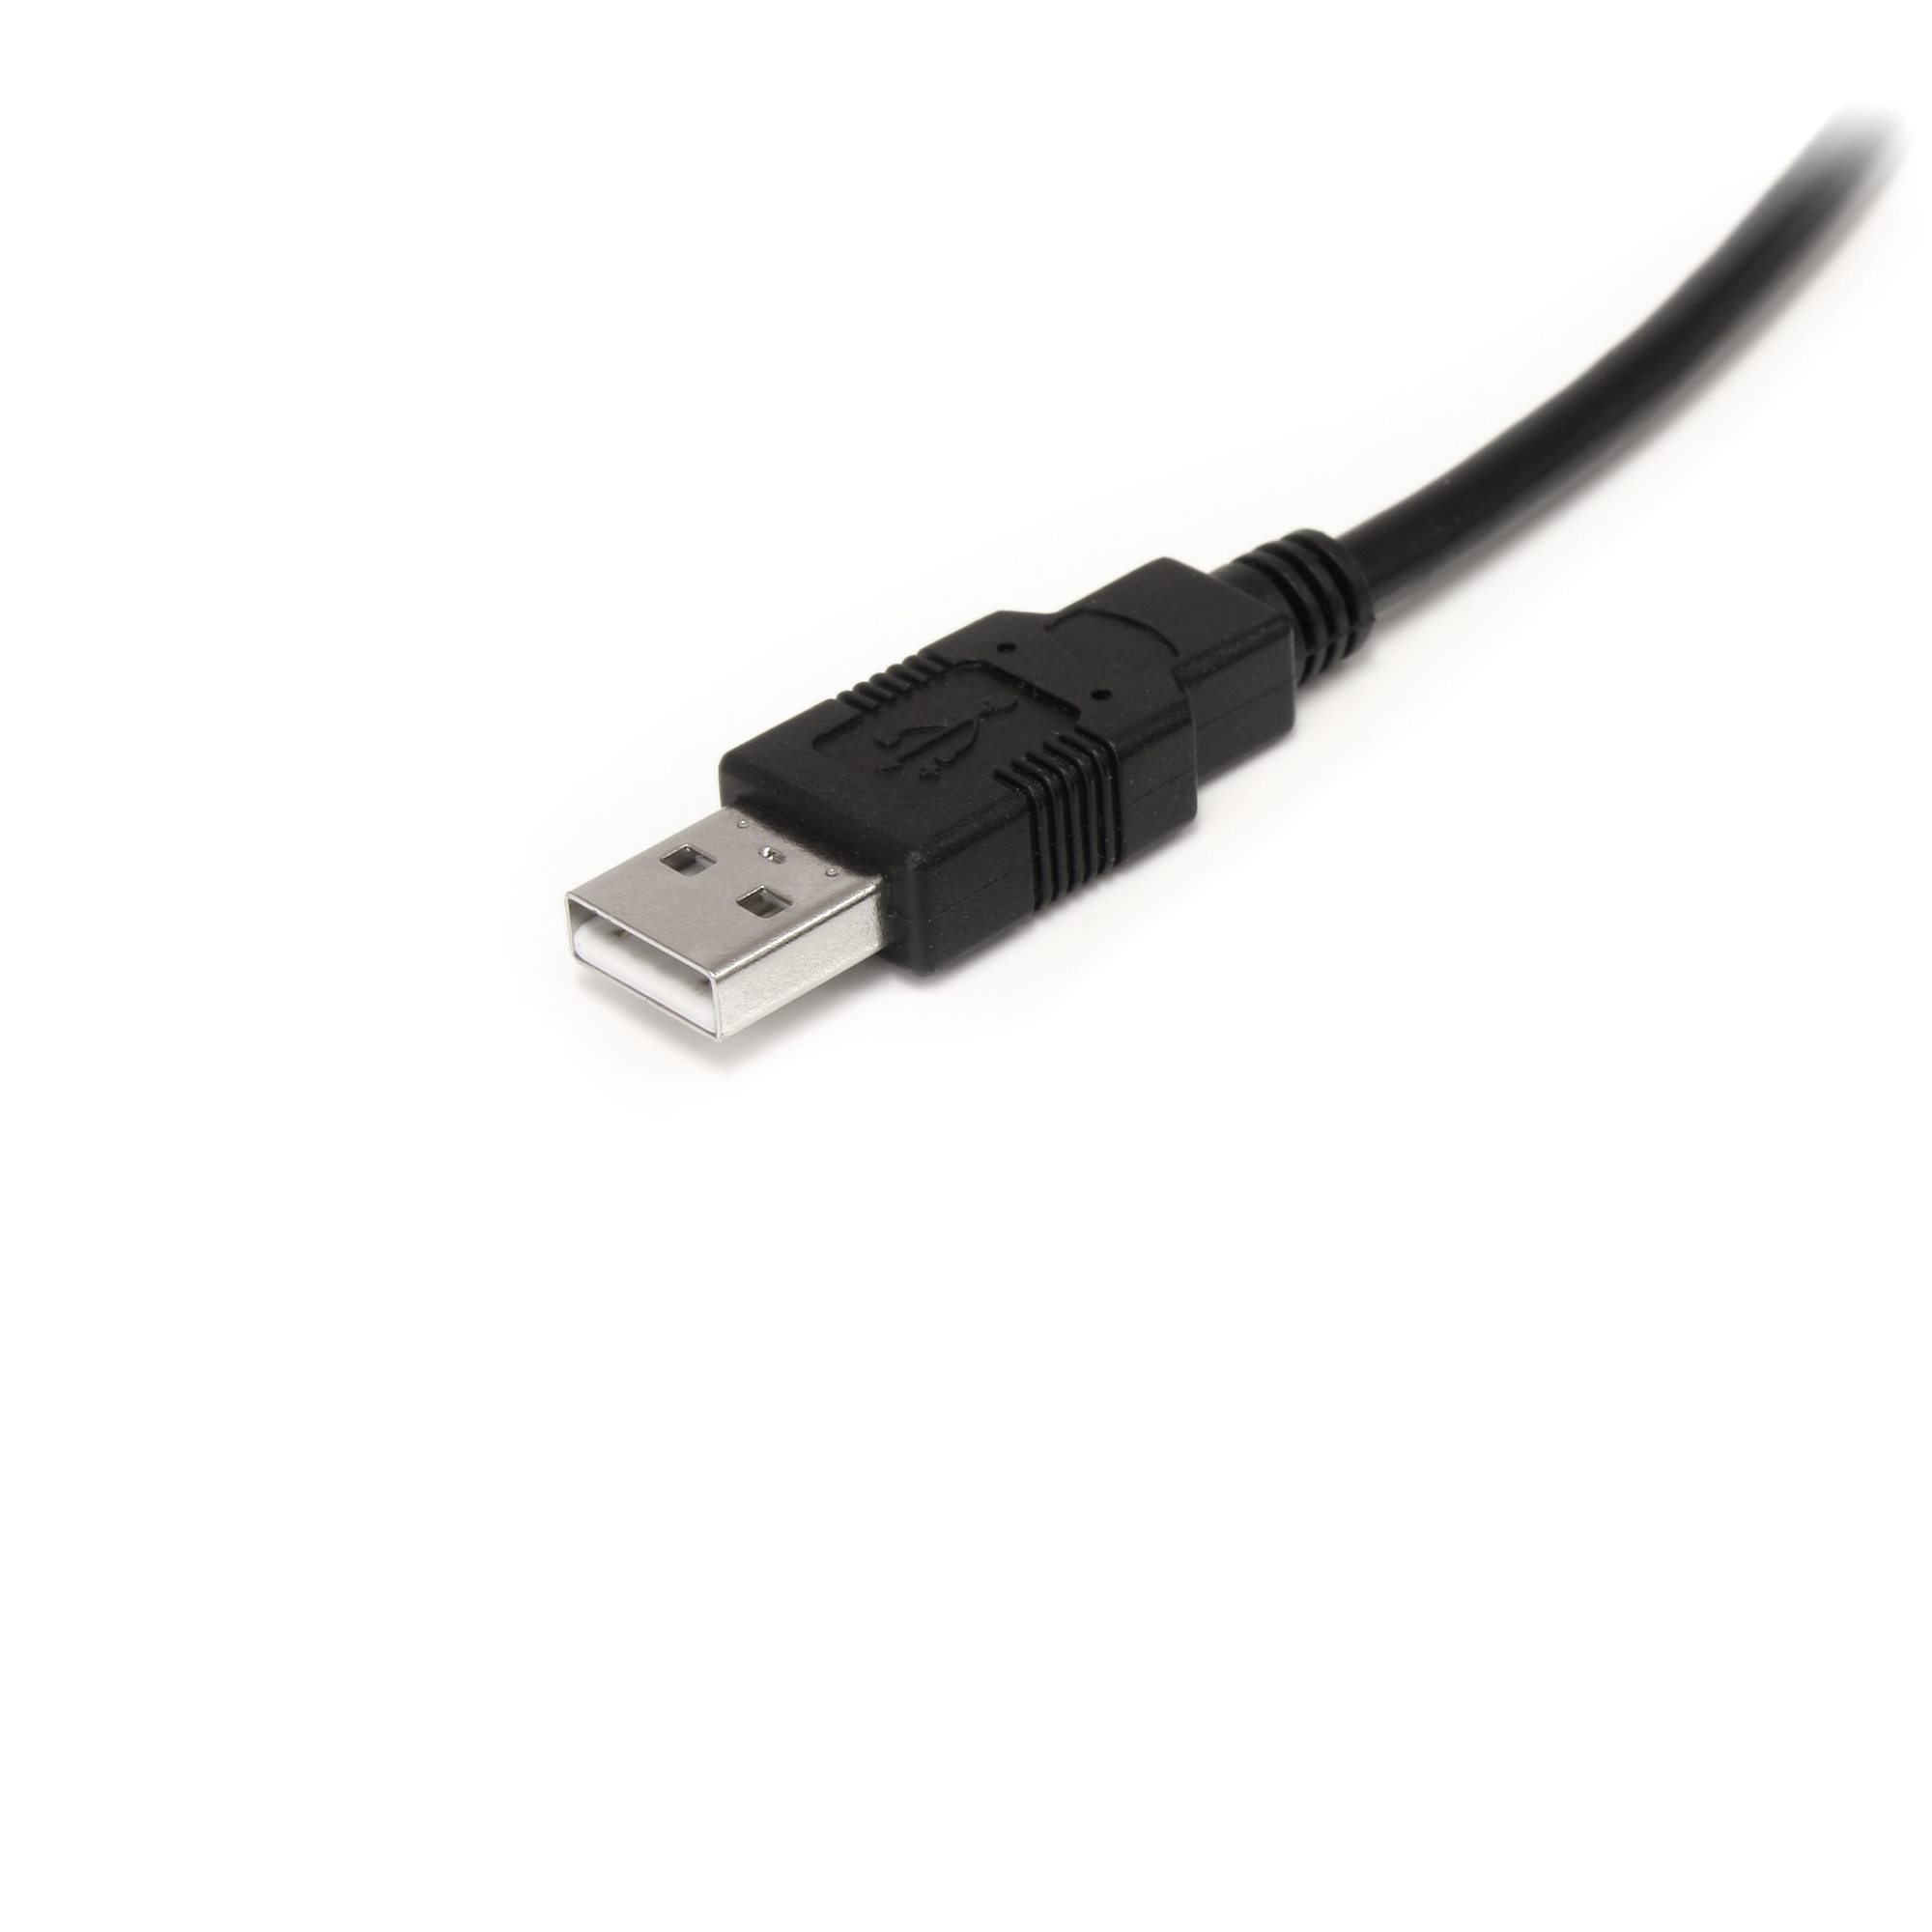 Cable de 9m USB A a USB B Activo - Macho a Macho - Cable de Impresora -  Negro - Cable de Extensión Alargador USB 2.0